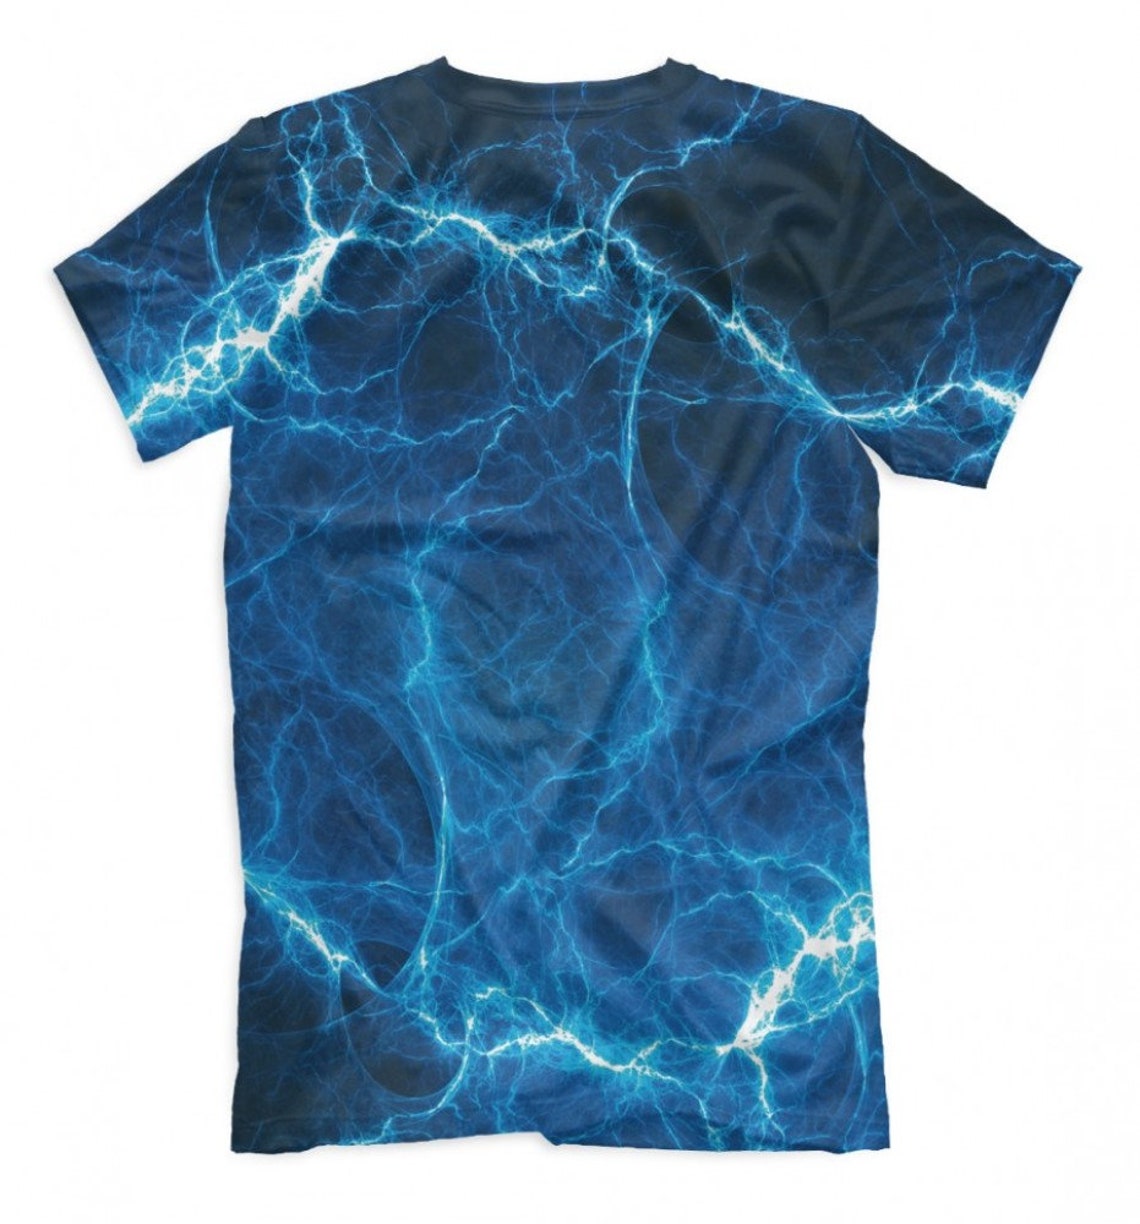 Blue Lightning Graphic T-shirt Men's Women's All | Etsy